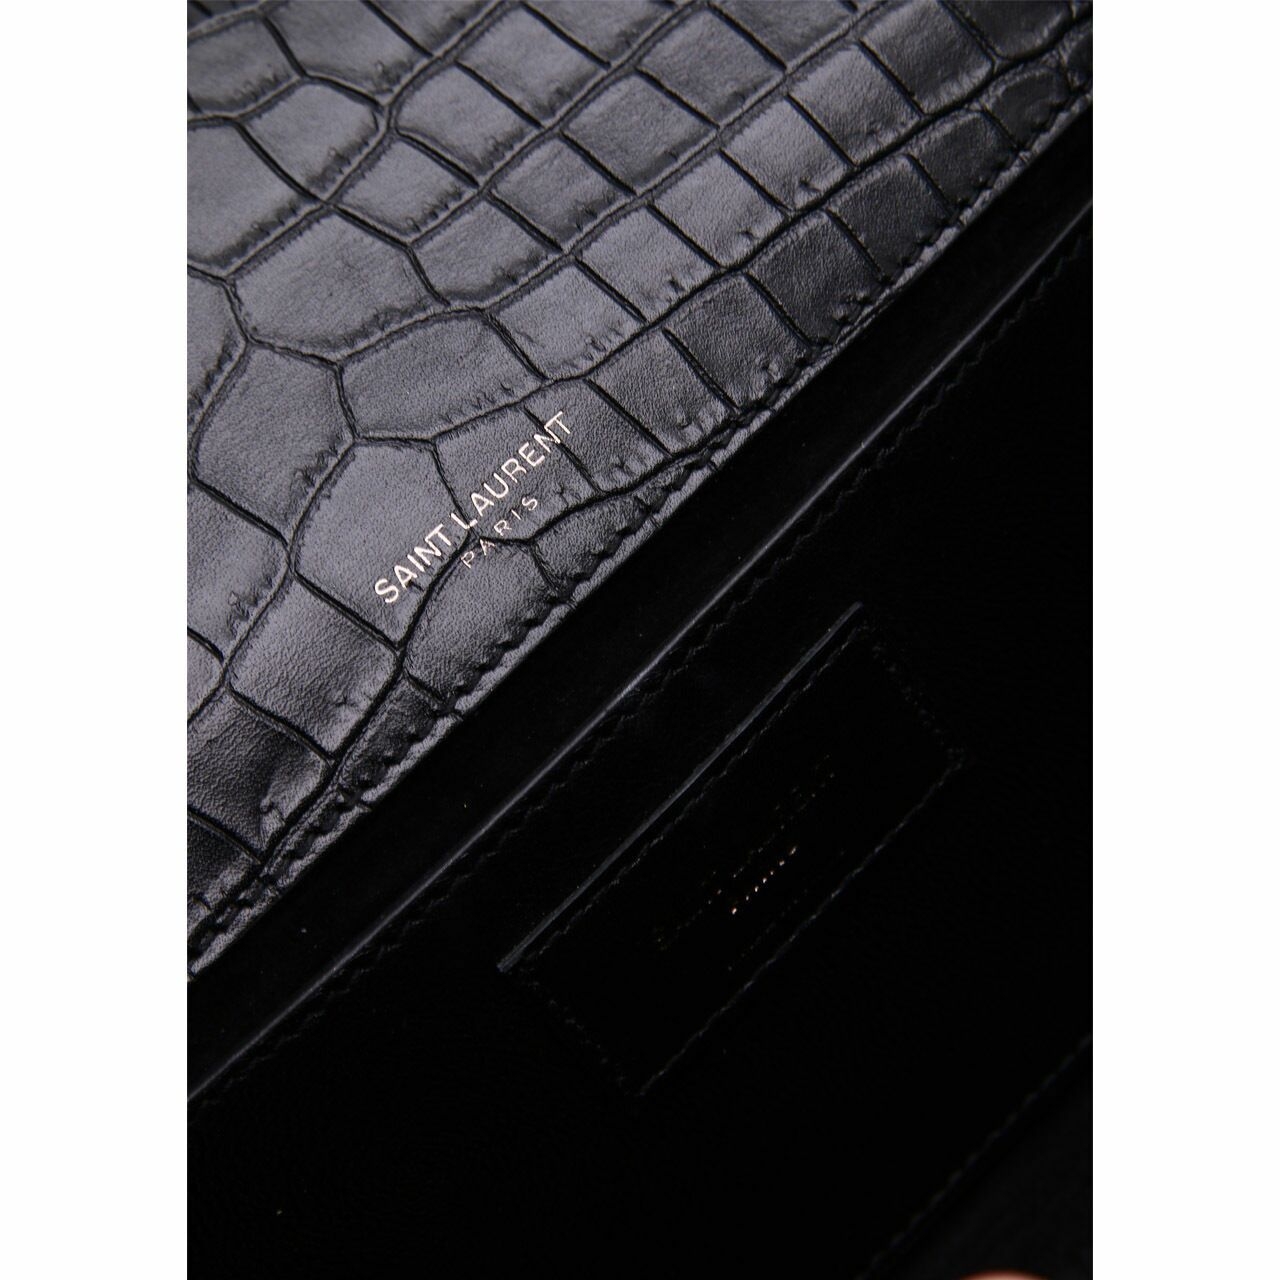 Yves Saint Laurent Crocodile Embossed Black Clutch